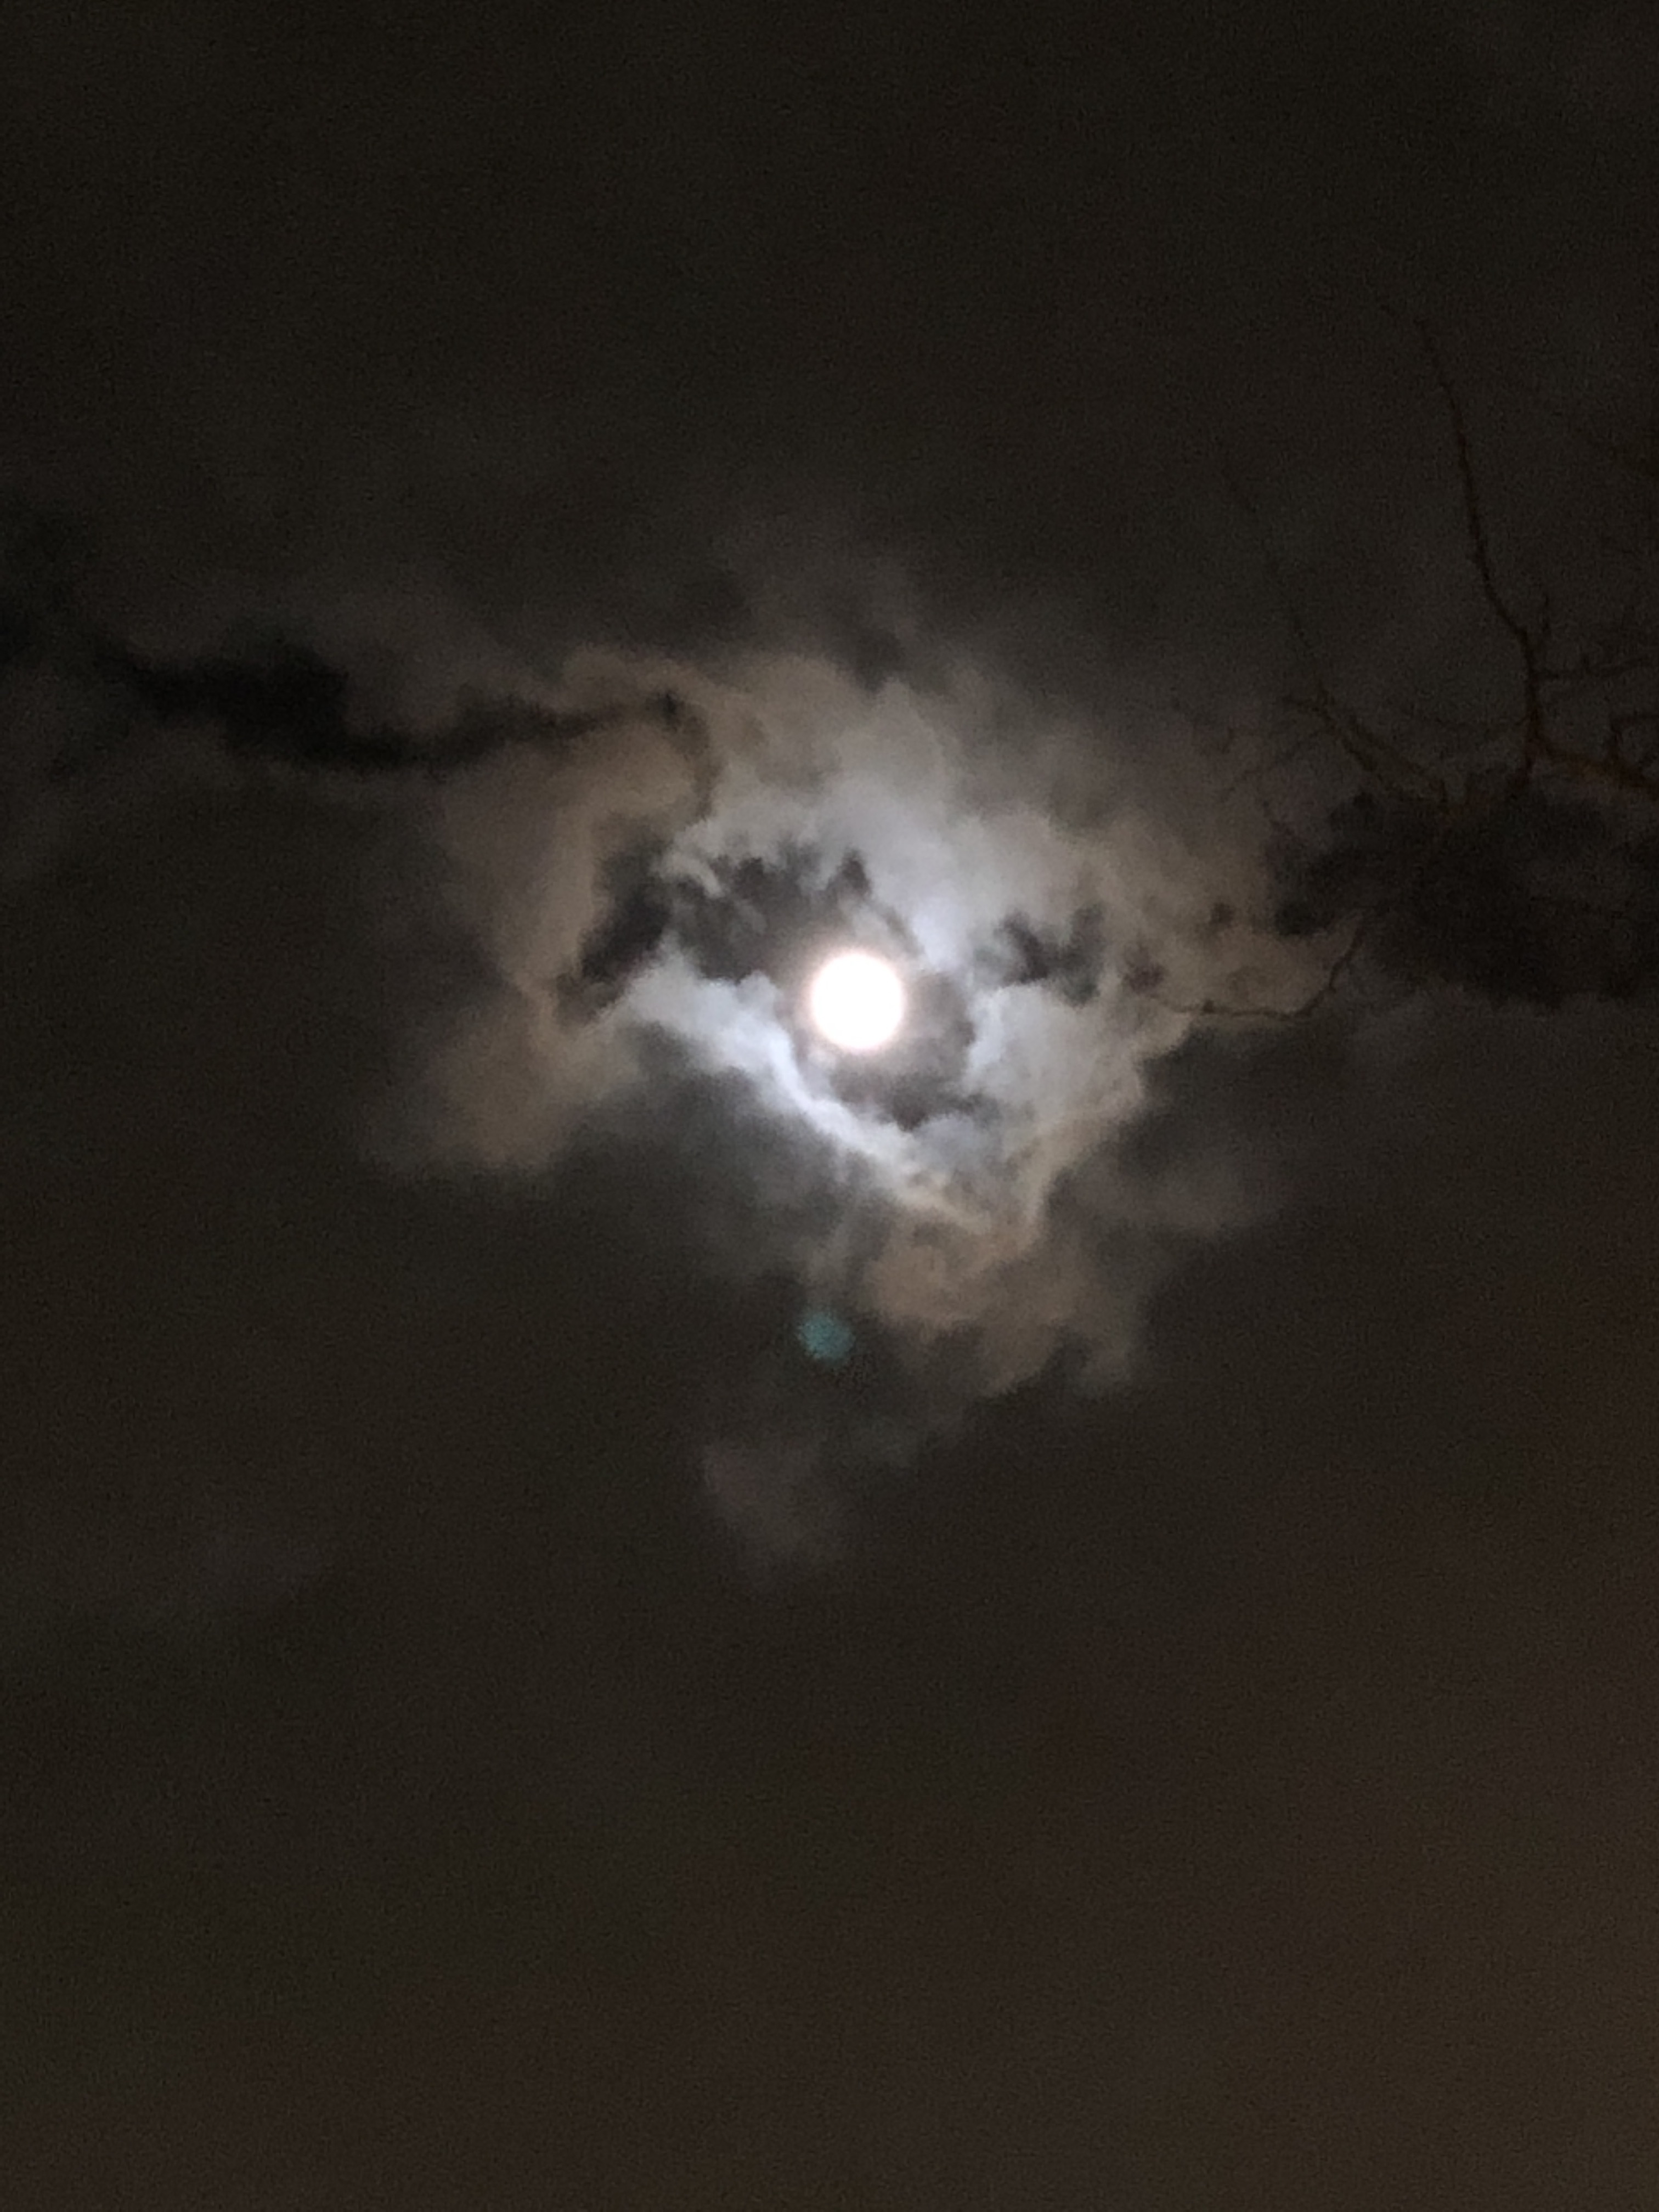 たかみー 金運上昇チャンネル 今日は満月ですね 福岡は曇りでしたが 雲と雲の間から お月様を見ることが出来ましたよ ただ曇りでもお財布フリフリで 浄化されますので ぜひ今年最後の満月を楽しんでくださいね T Co 2jtdutuyzc Twitter